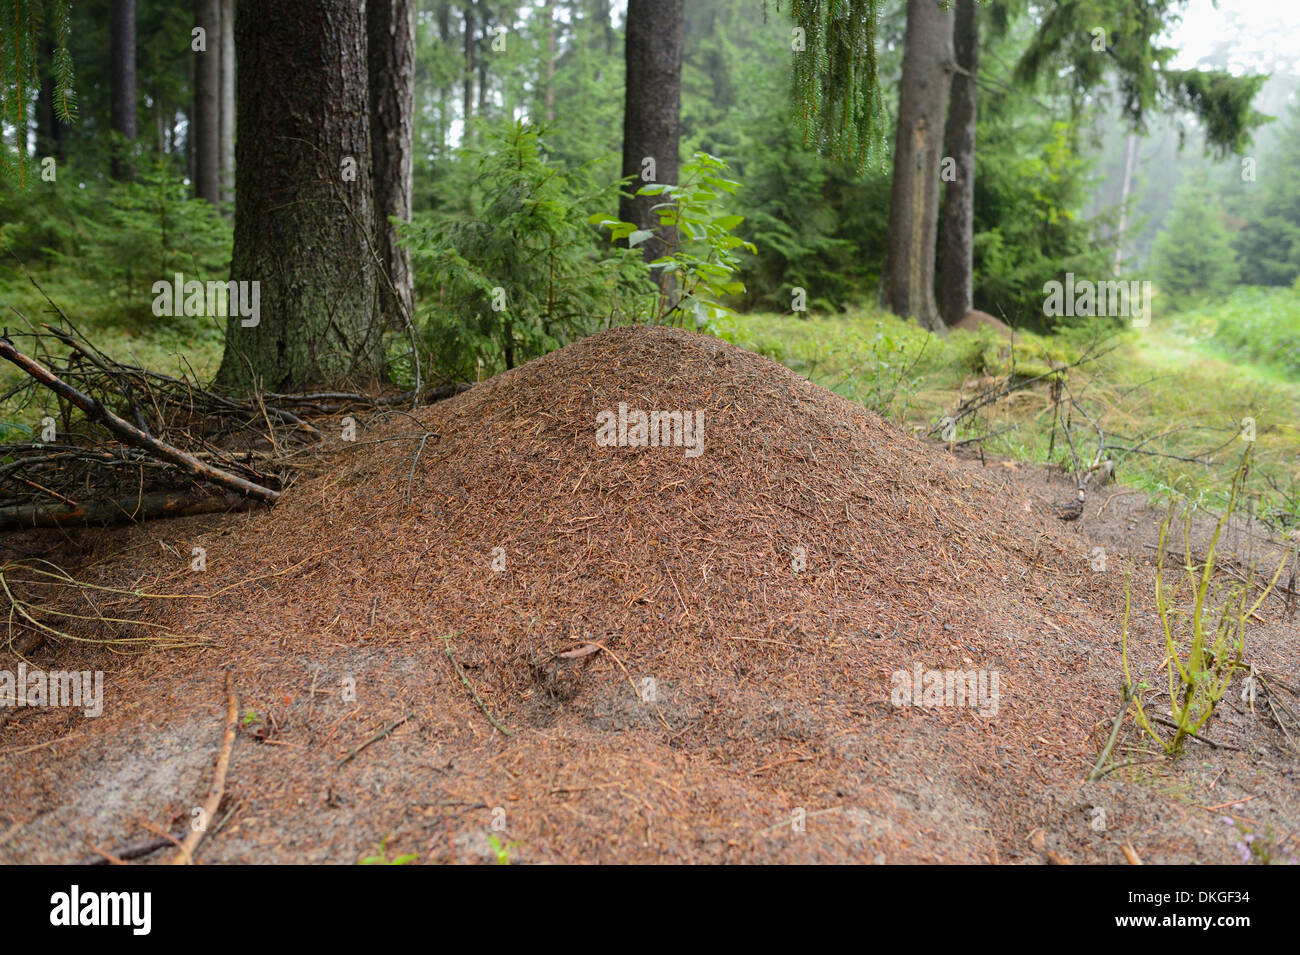 Ameisenhaufen von Waldameisen (Formica) in einem Wald Stockfoto